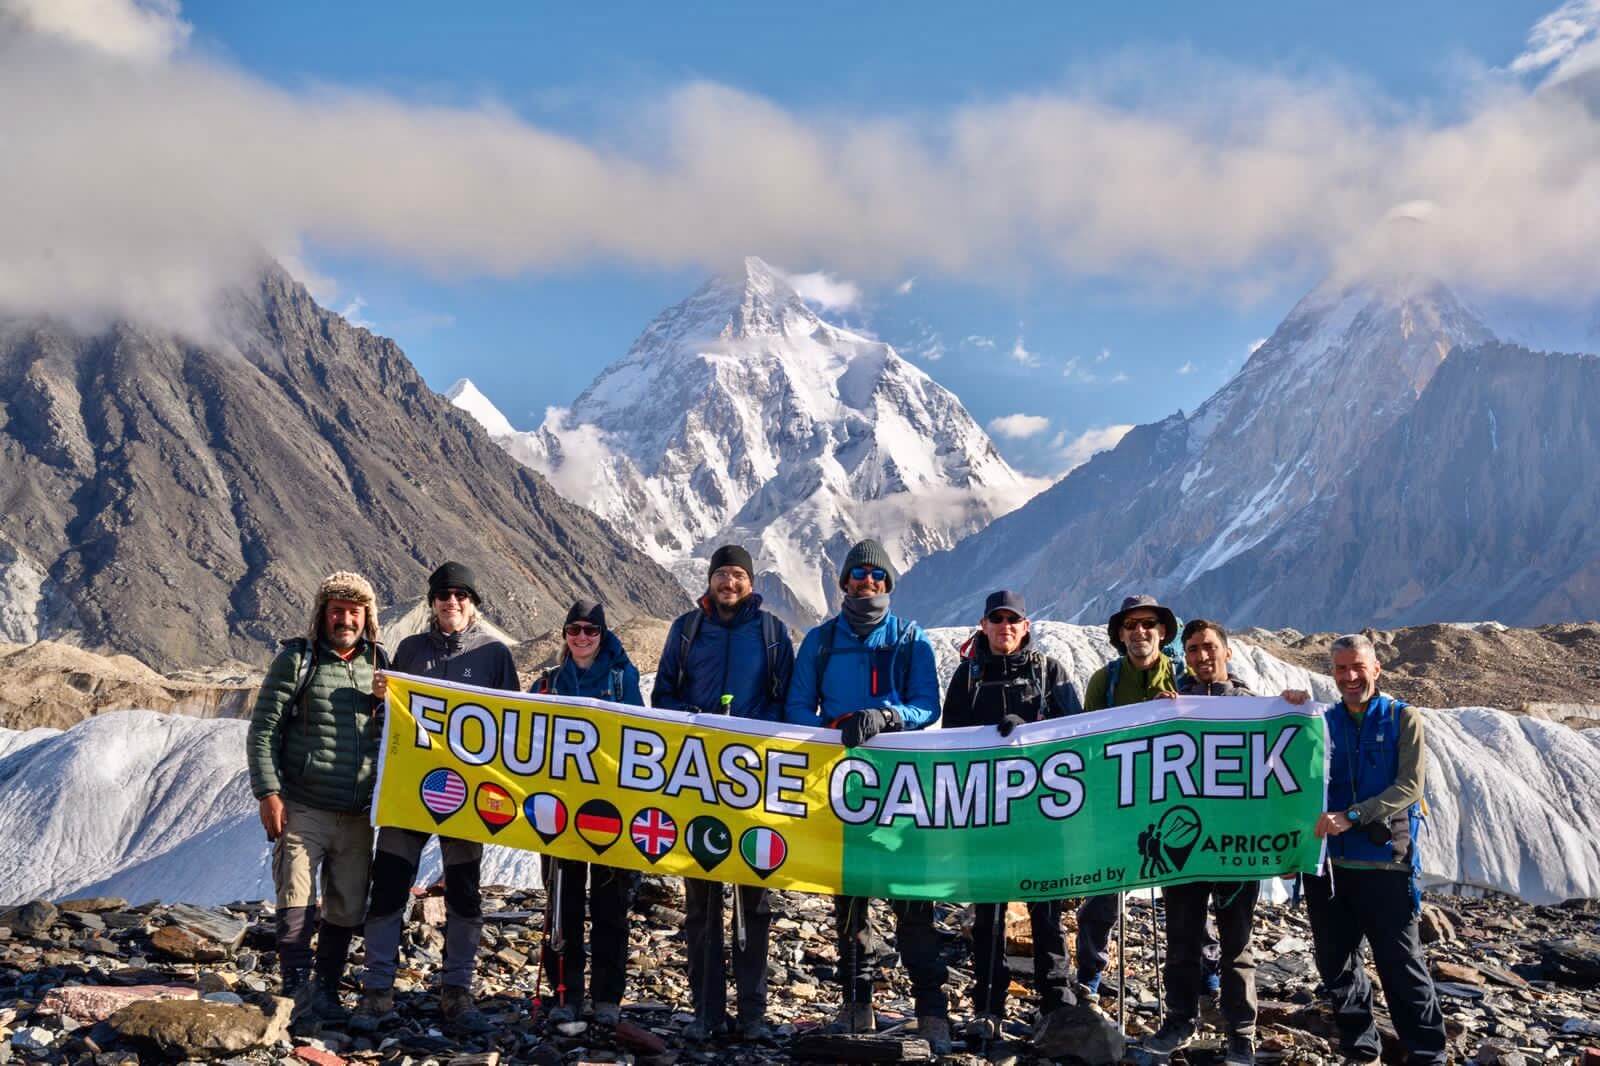 Karakoram Trek (Four 8,000m Base Camps)